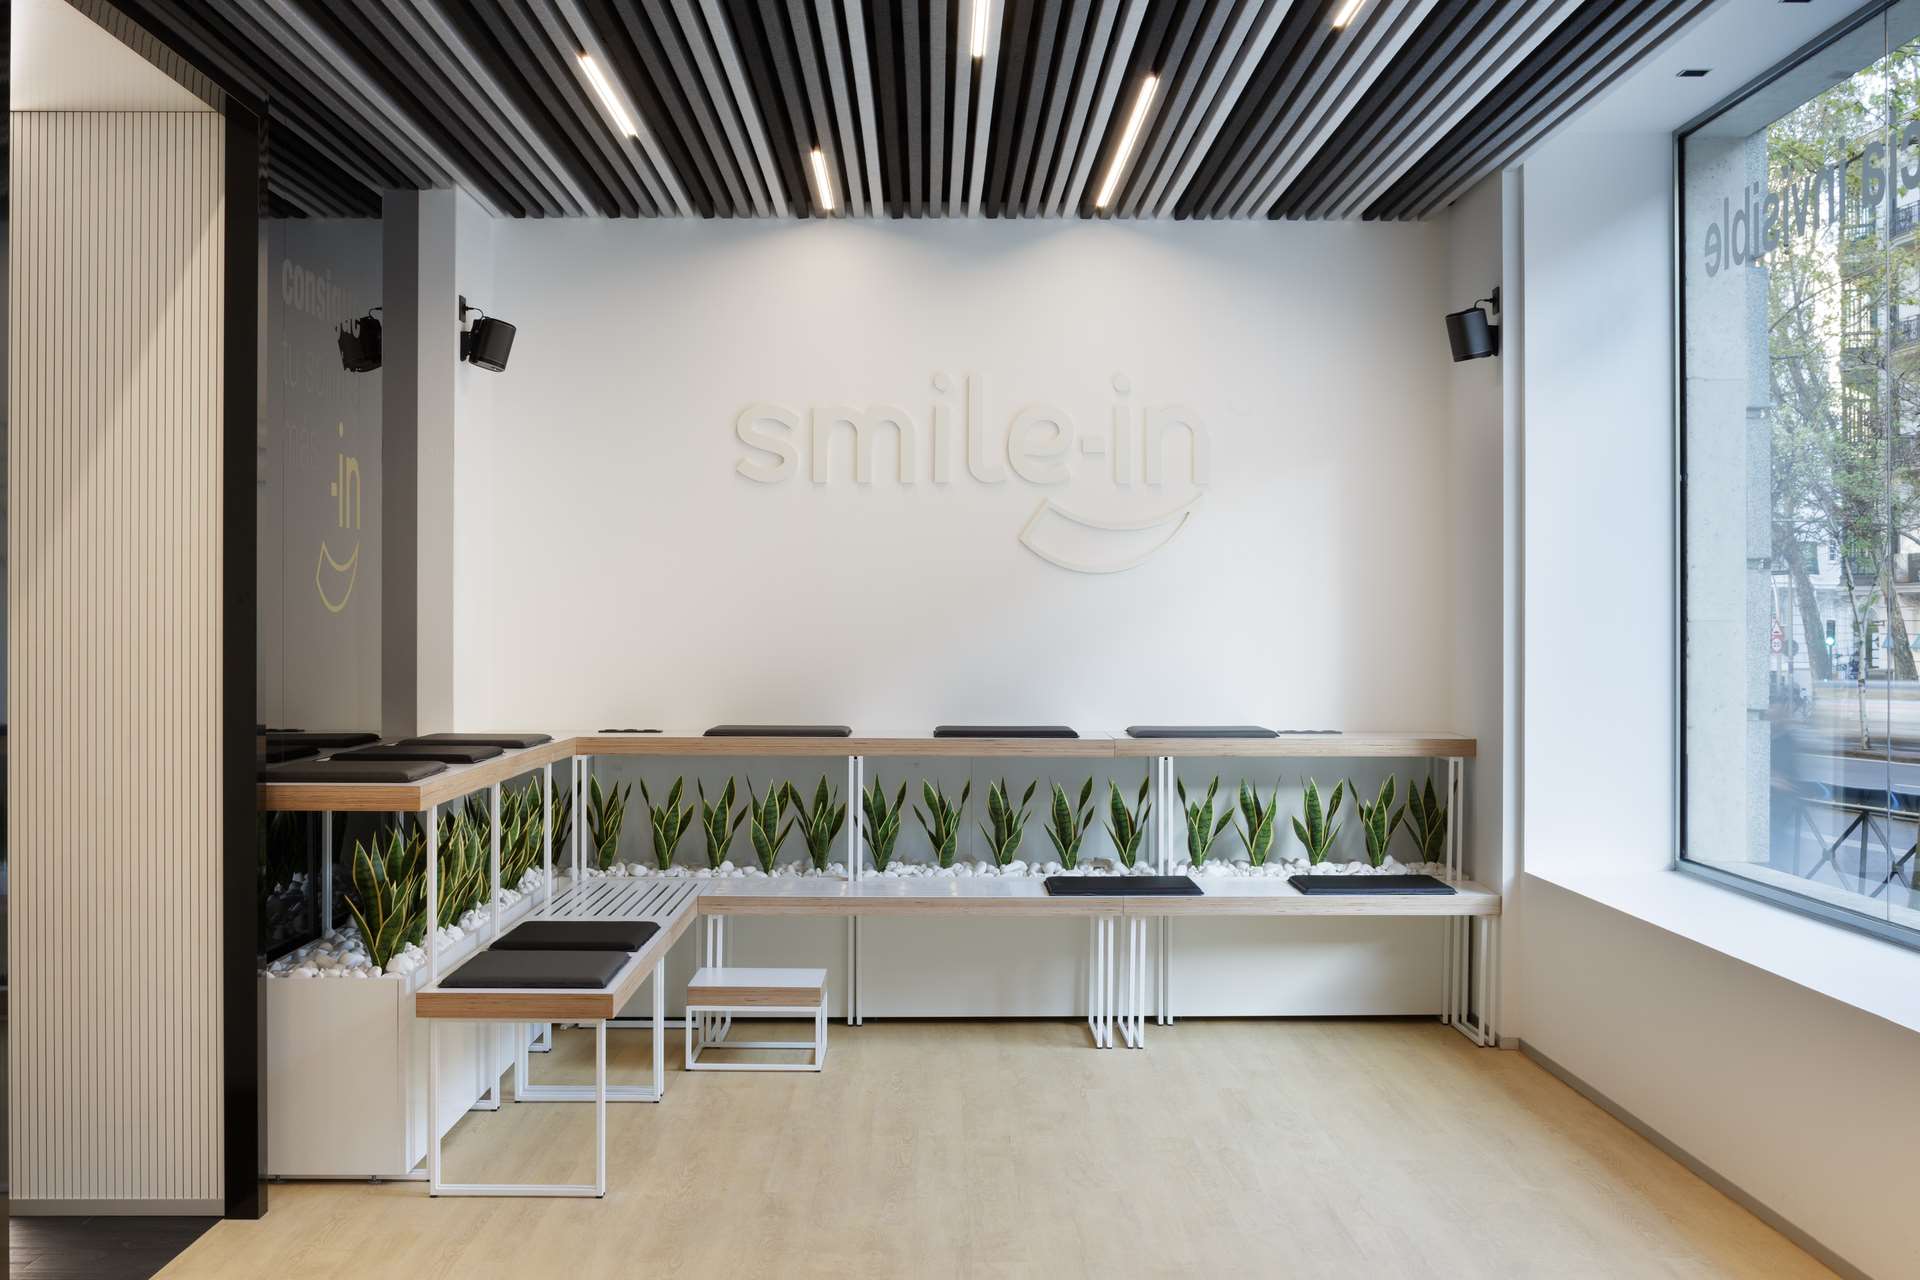 Smile-In Dental Clinic